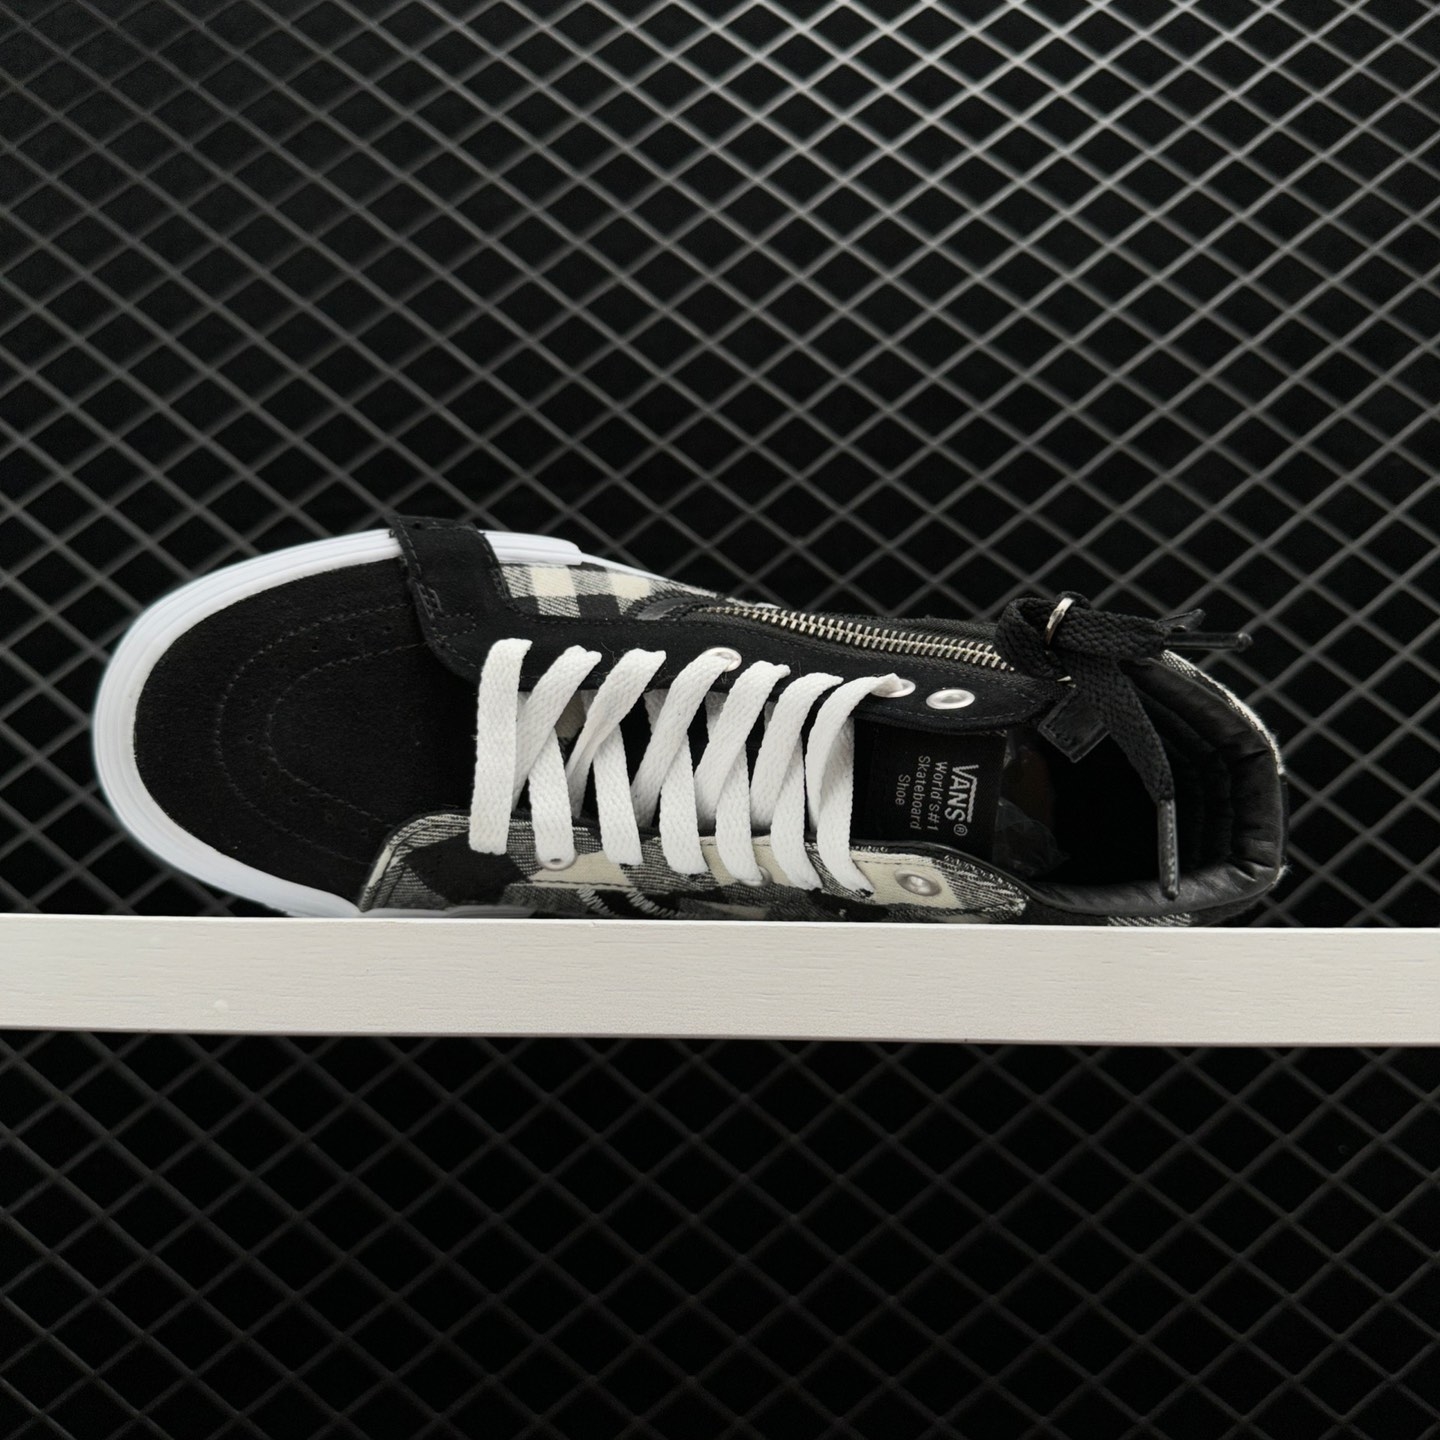 Vans SK8 HI Reissue Cap 'Black White' - Iconic Skateboarding Sneakers